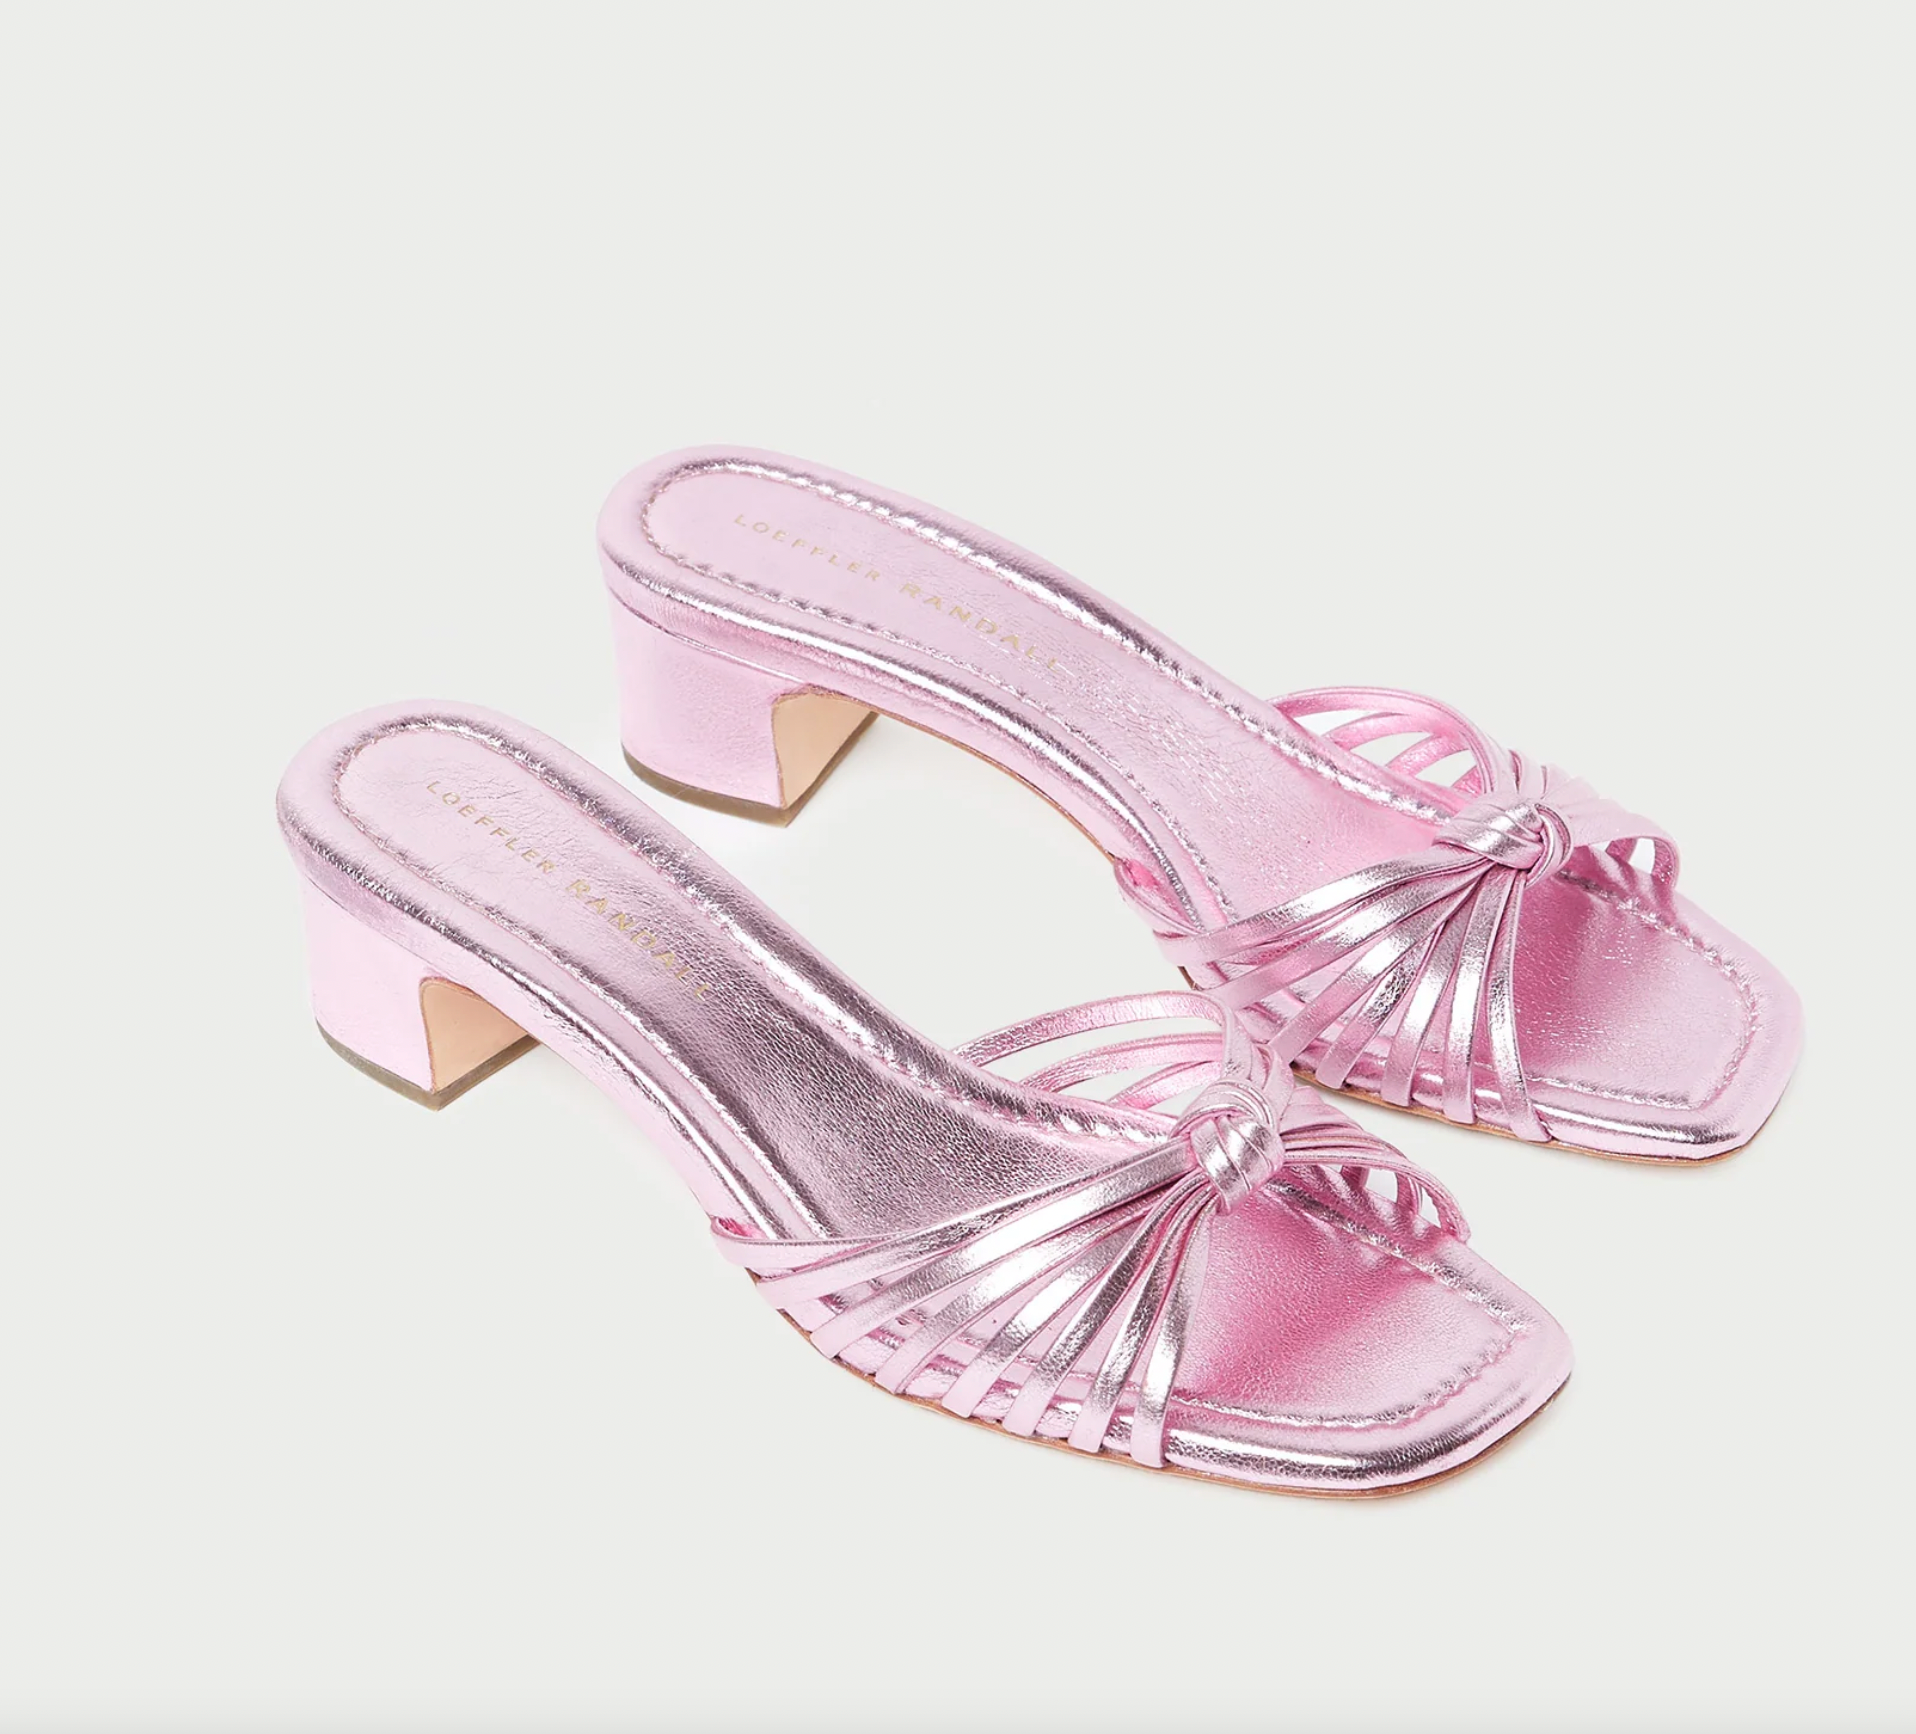 Hazel Knot Mid-Heel Mule Sandal - Pink